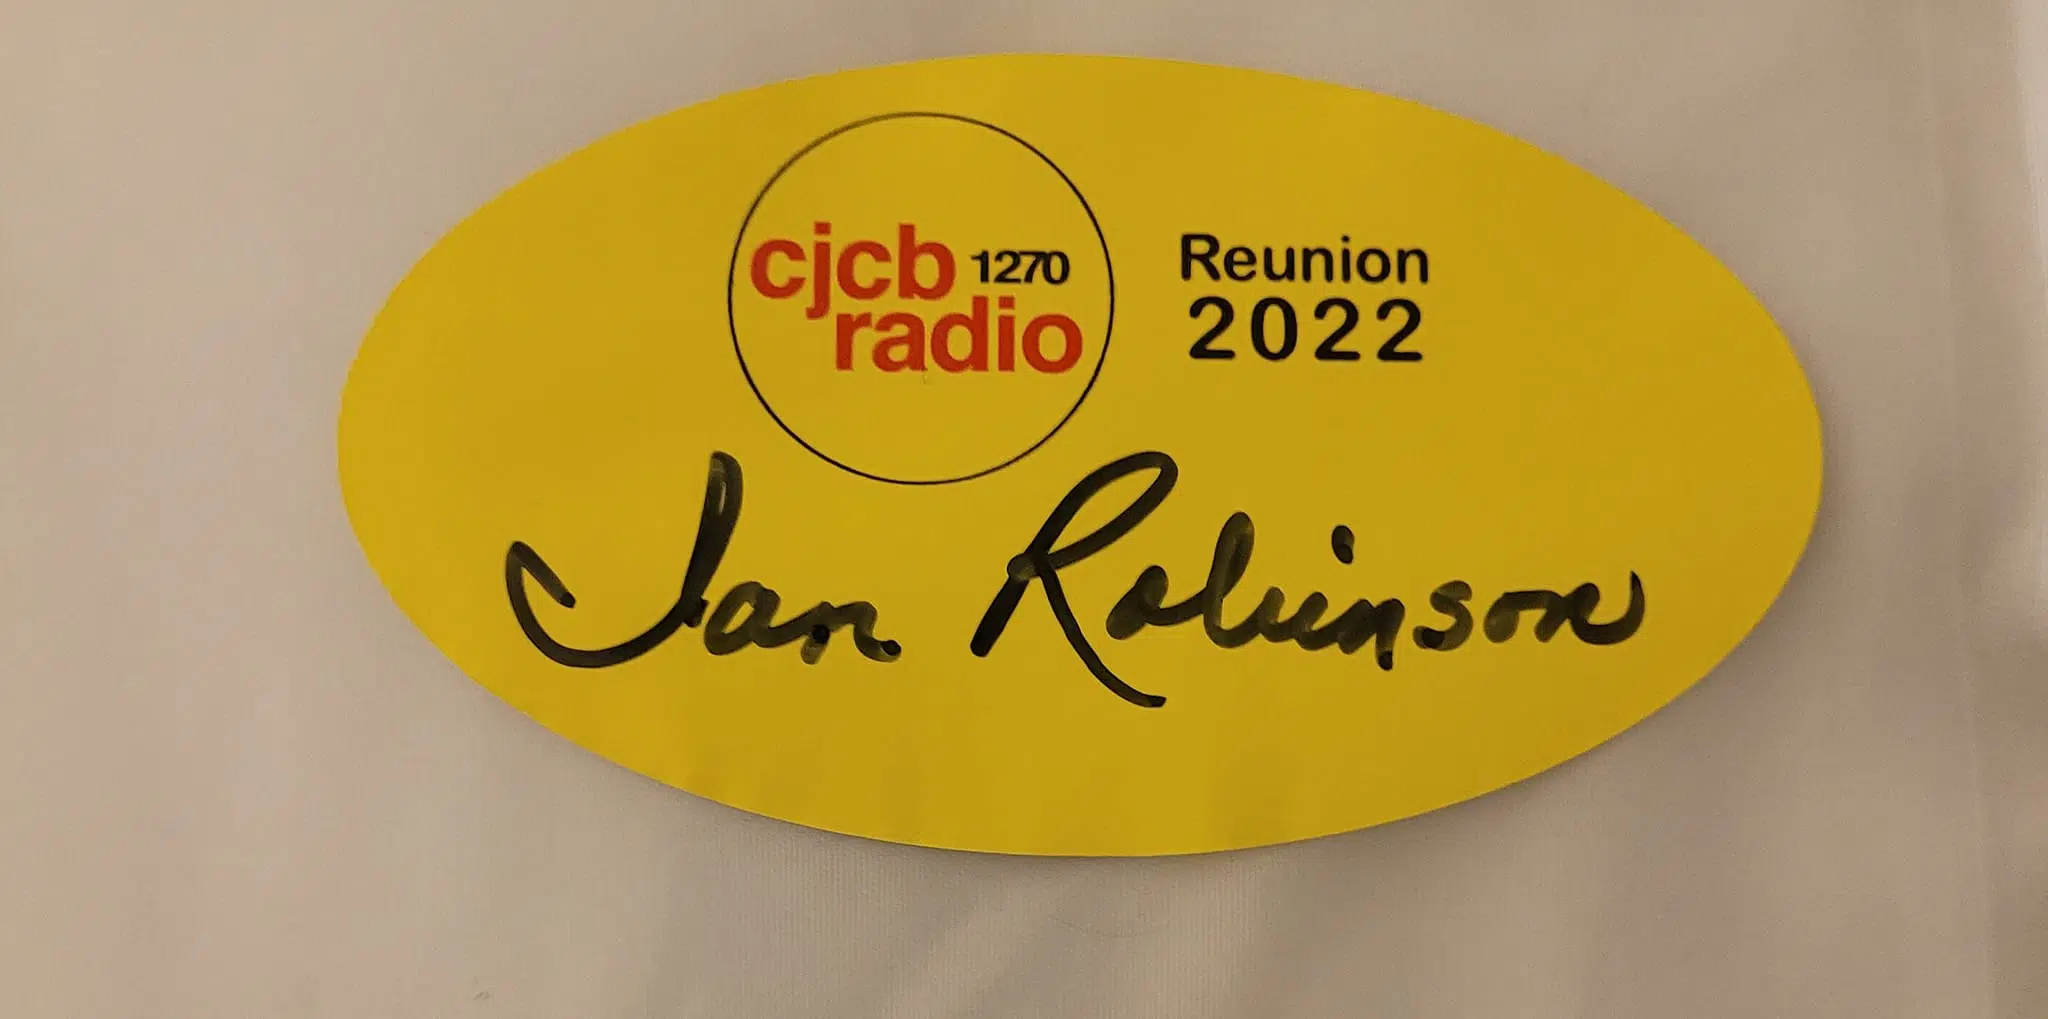 Ian Attends Radio Reunion